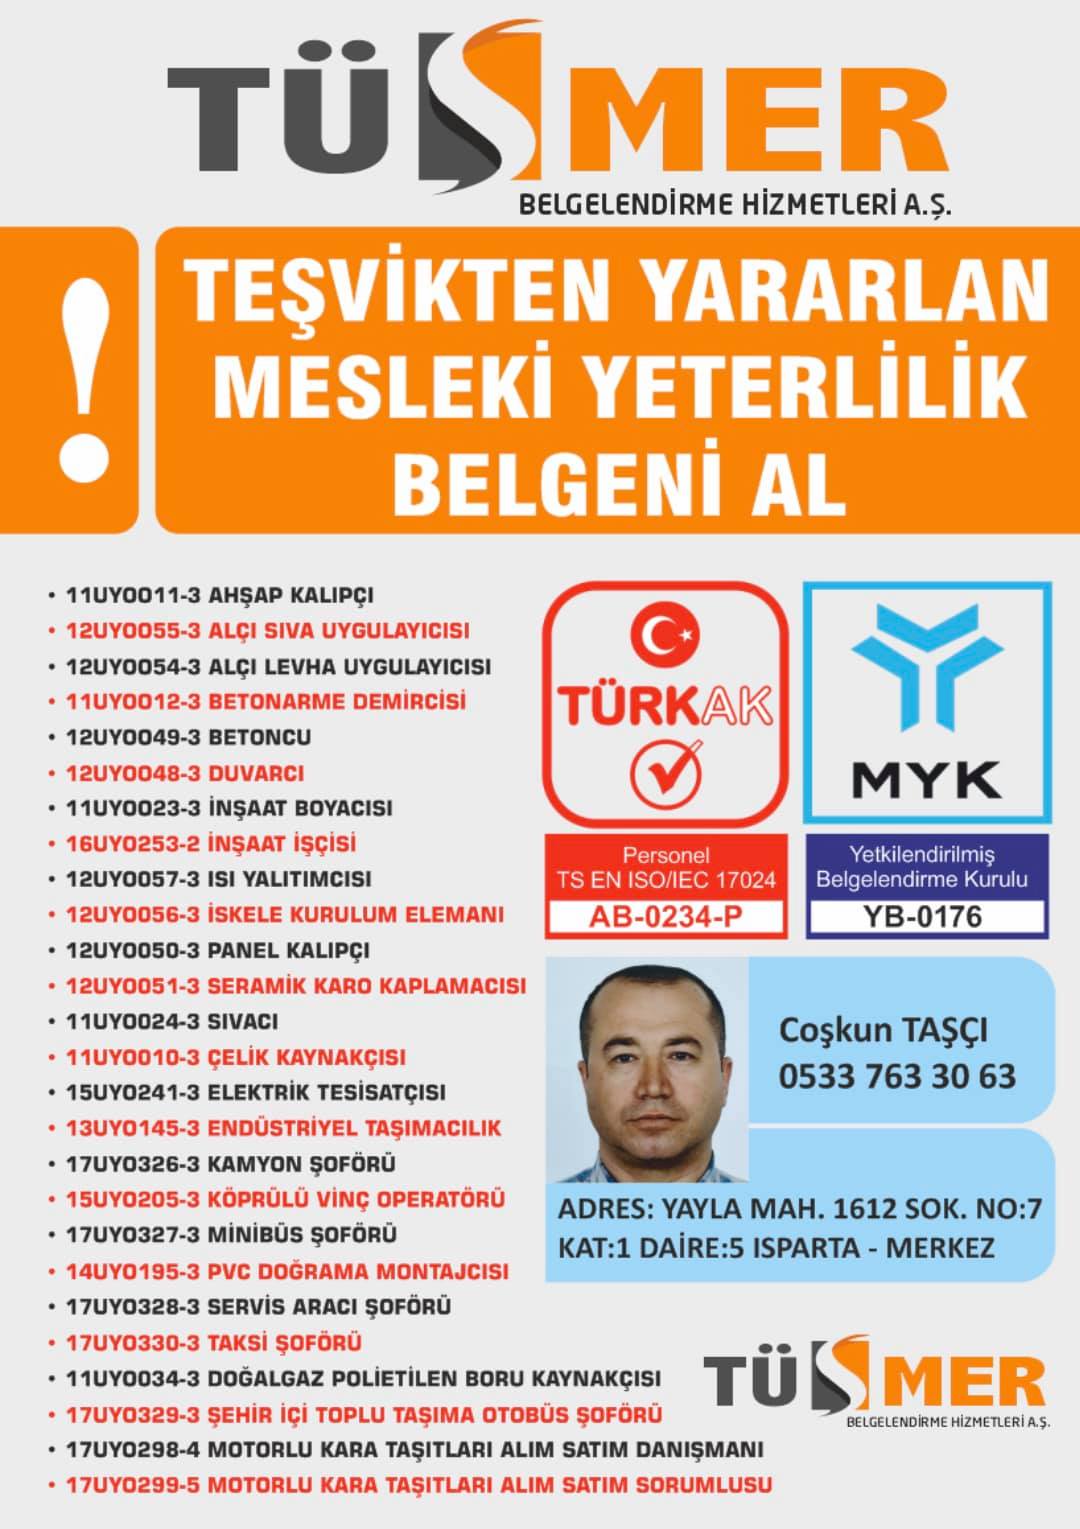 MYK MESLEKİ YETERLİLİK BELGESİ AmbarlıAvcılar İstanbul